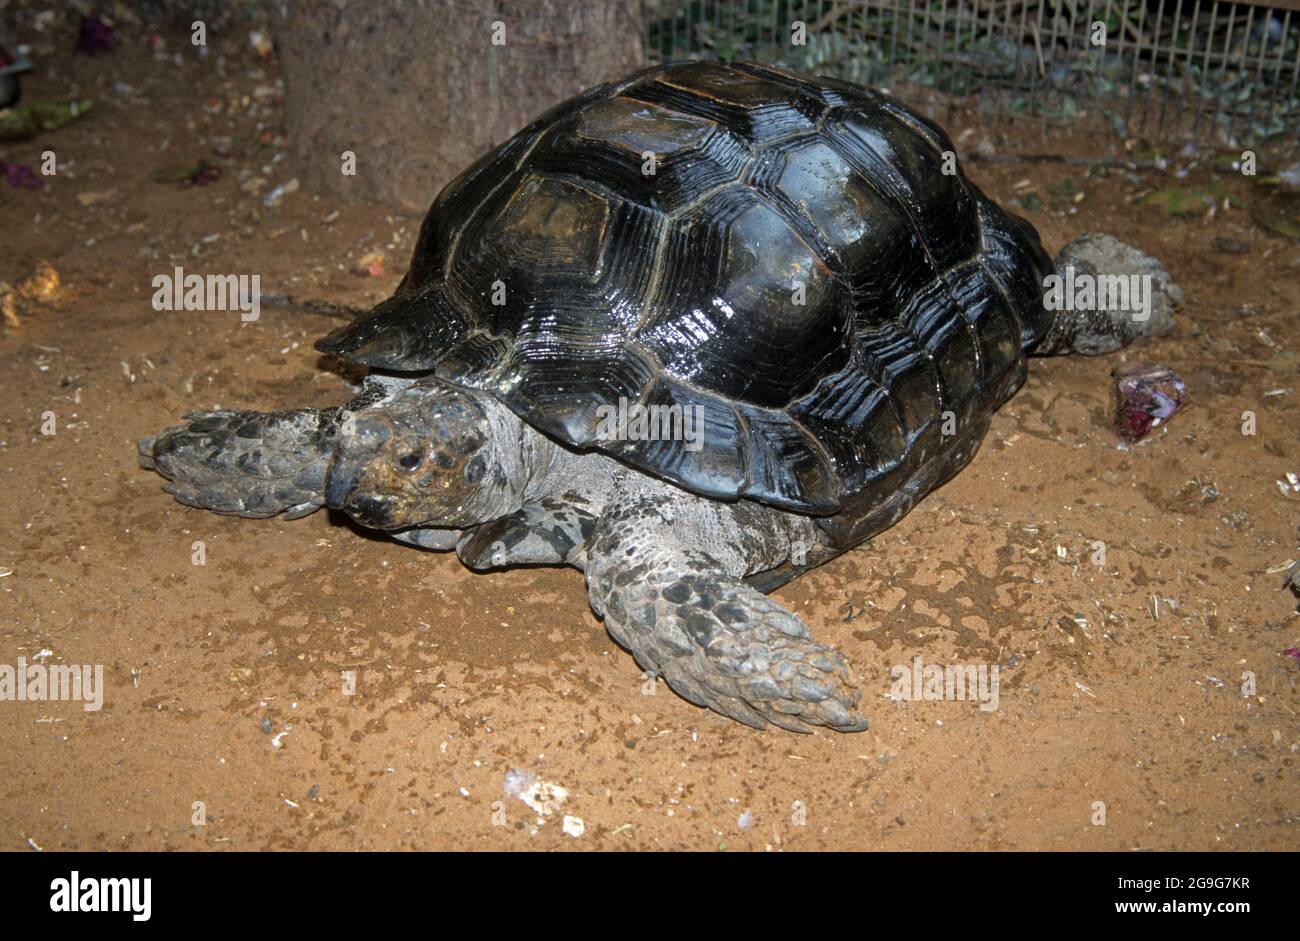 La tortue forestière asiatique (Manouria emys), également connue sous le nom de tortue brune asiatique, est une espèce de tortue de la famille des Testudinidae. Les Banque D'Images